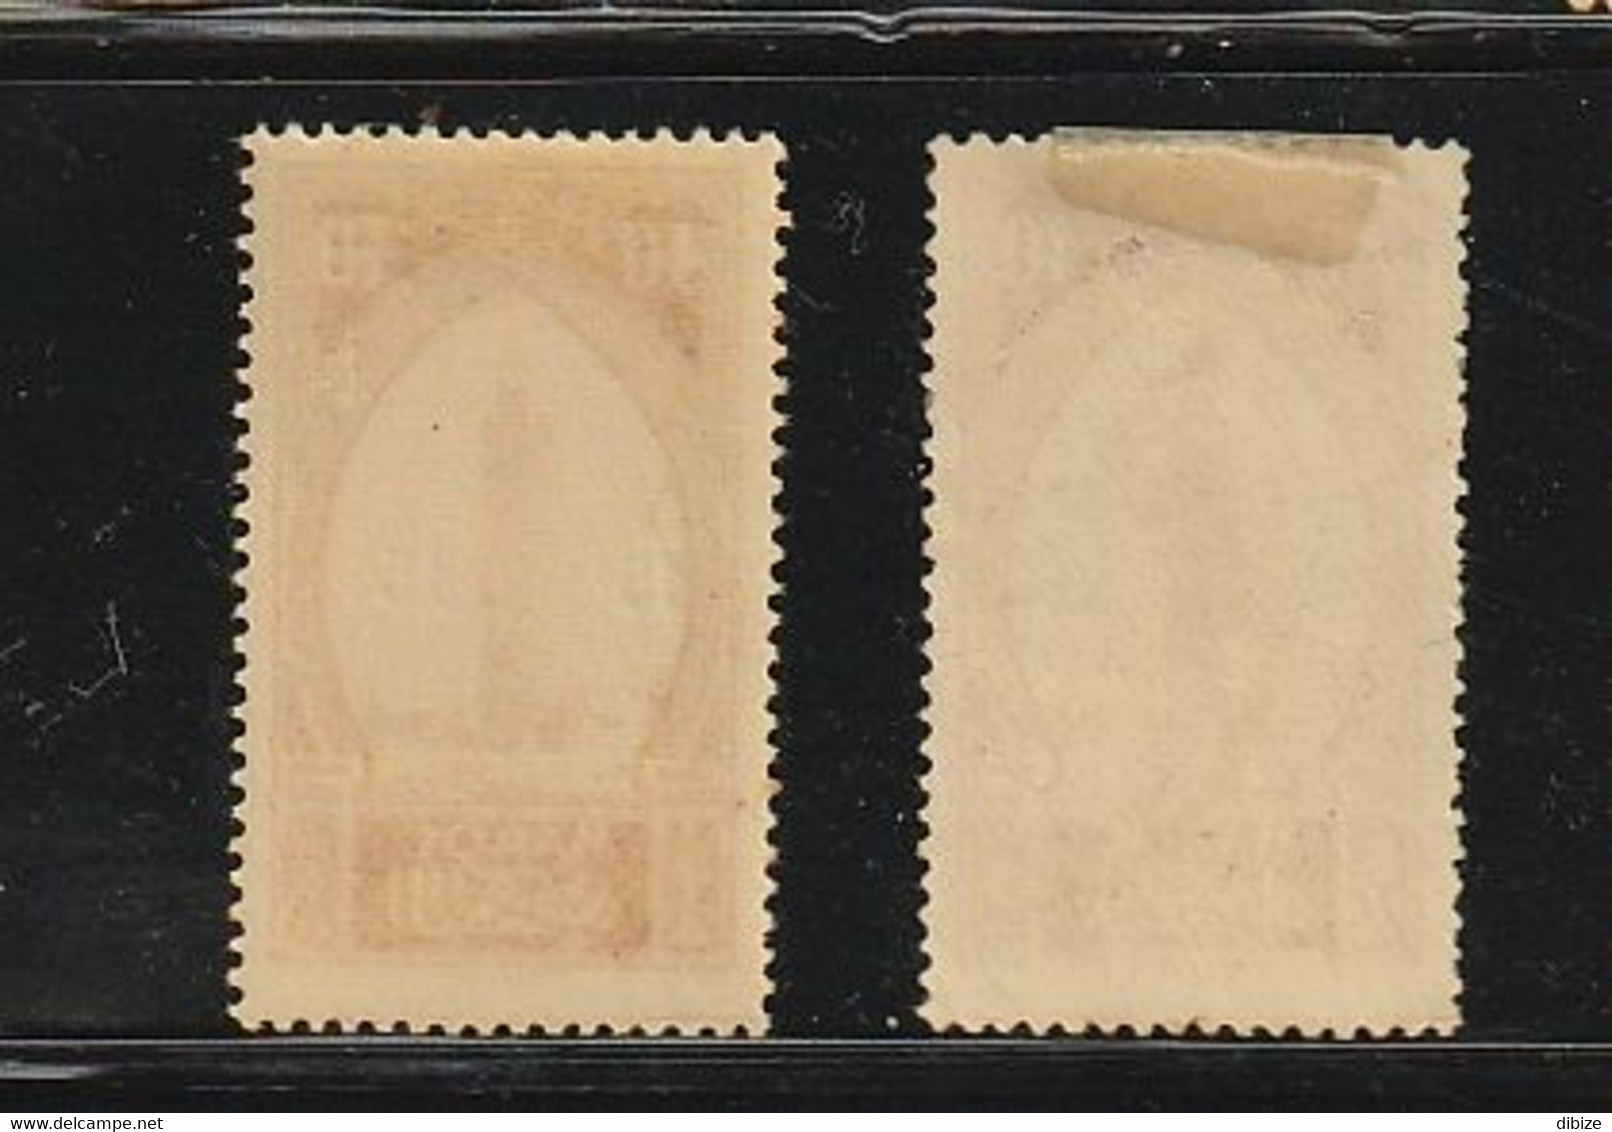 Maroc. Timbre Neuf. Protectorat Yvert N° 124. 1930-31. Koutoubia. Marrakech. Erreur. Varieté. Le C De La Surcharge Plein - Oddities On Stamps